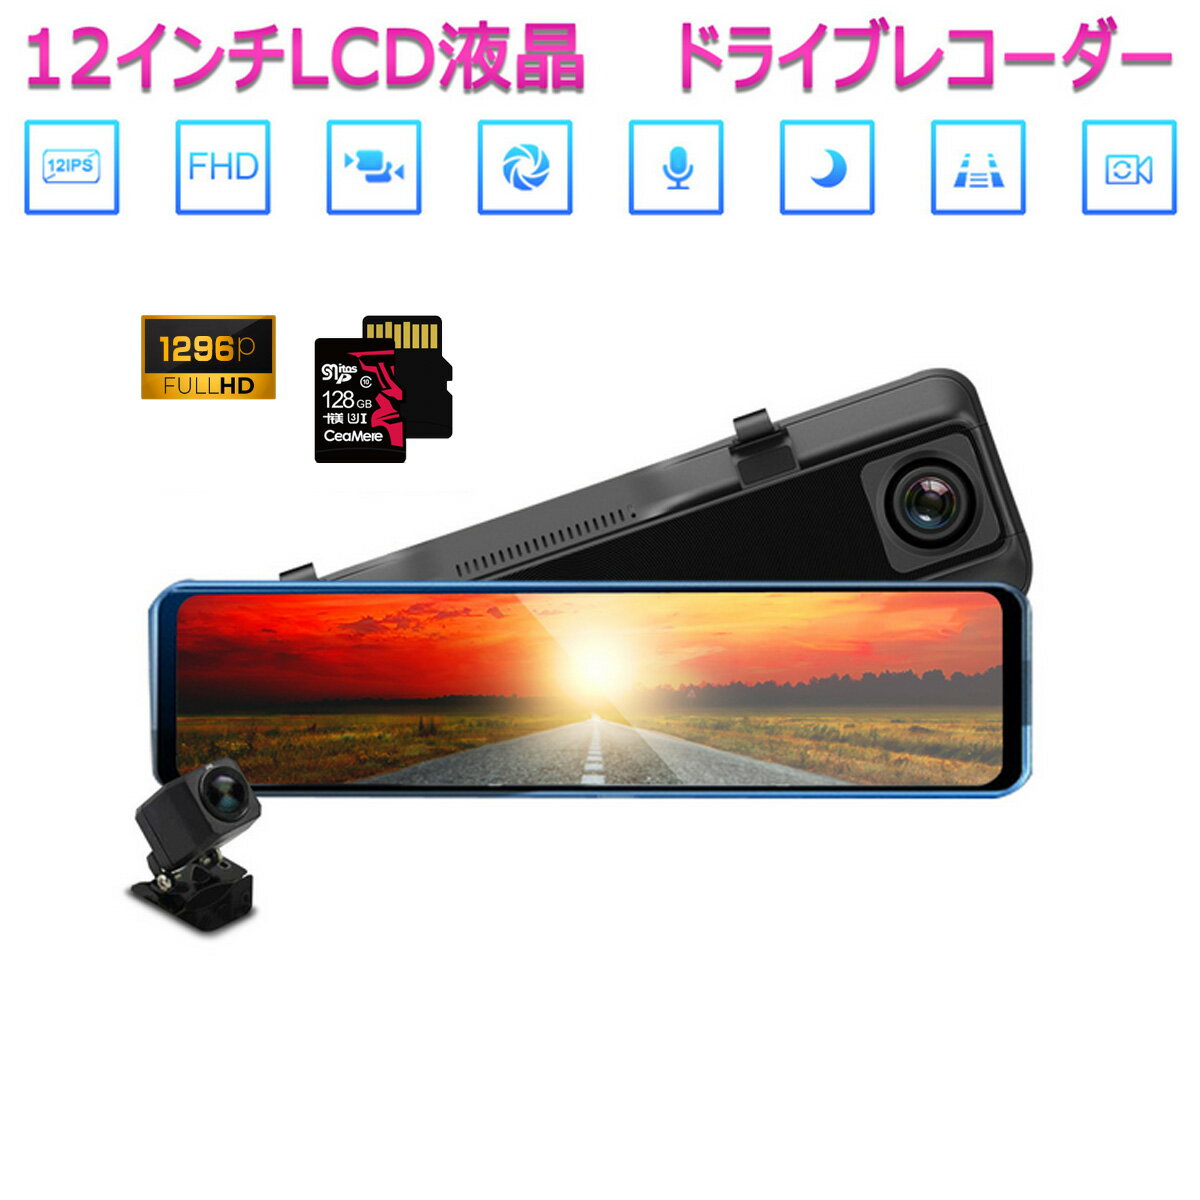 MITSUBISHI用の非純正品 シグマ ドライブレコーダー 前後カメラ 12インチ ミラー型 SDカード128GB同梱モデル あおり運転対策 FHD 2K 1296p 200万画素 タッチパネル 170度広角 バックカメラ 6ヶ月保証